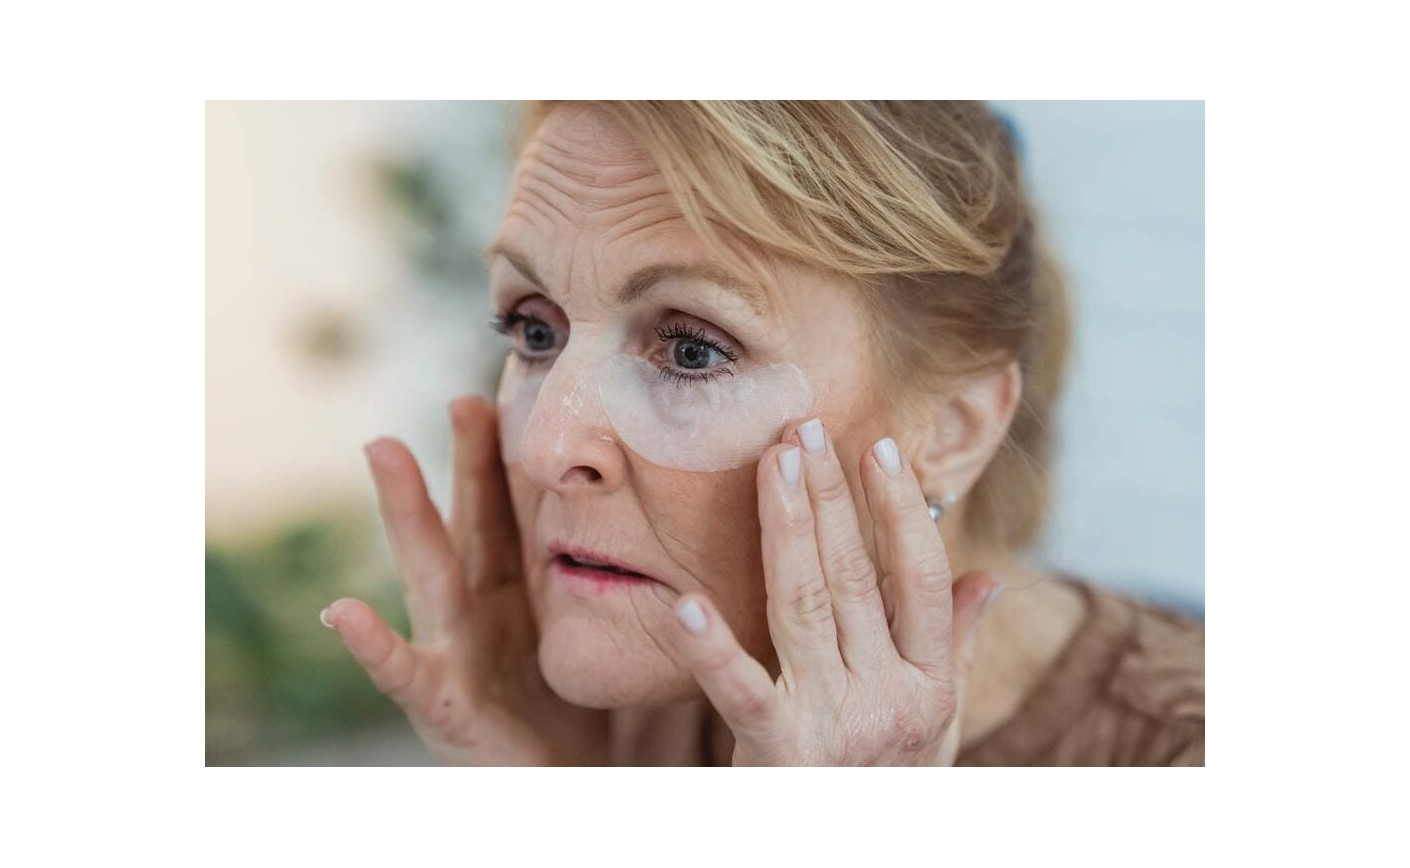 Jak spowolnić proces starzenia się skóry?